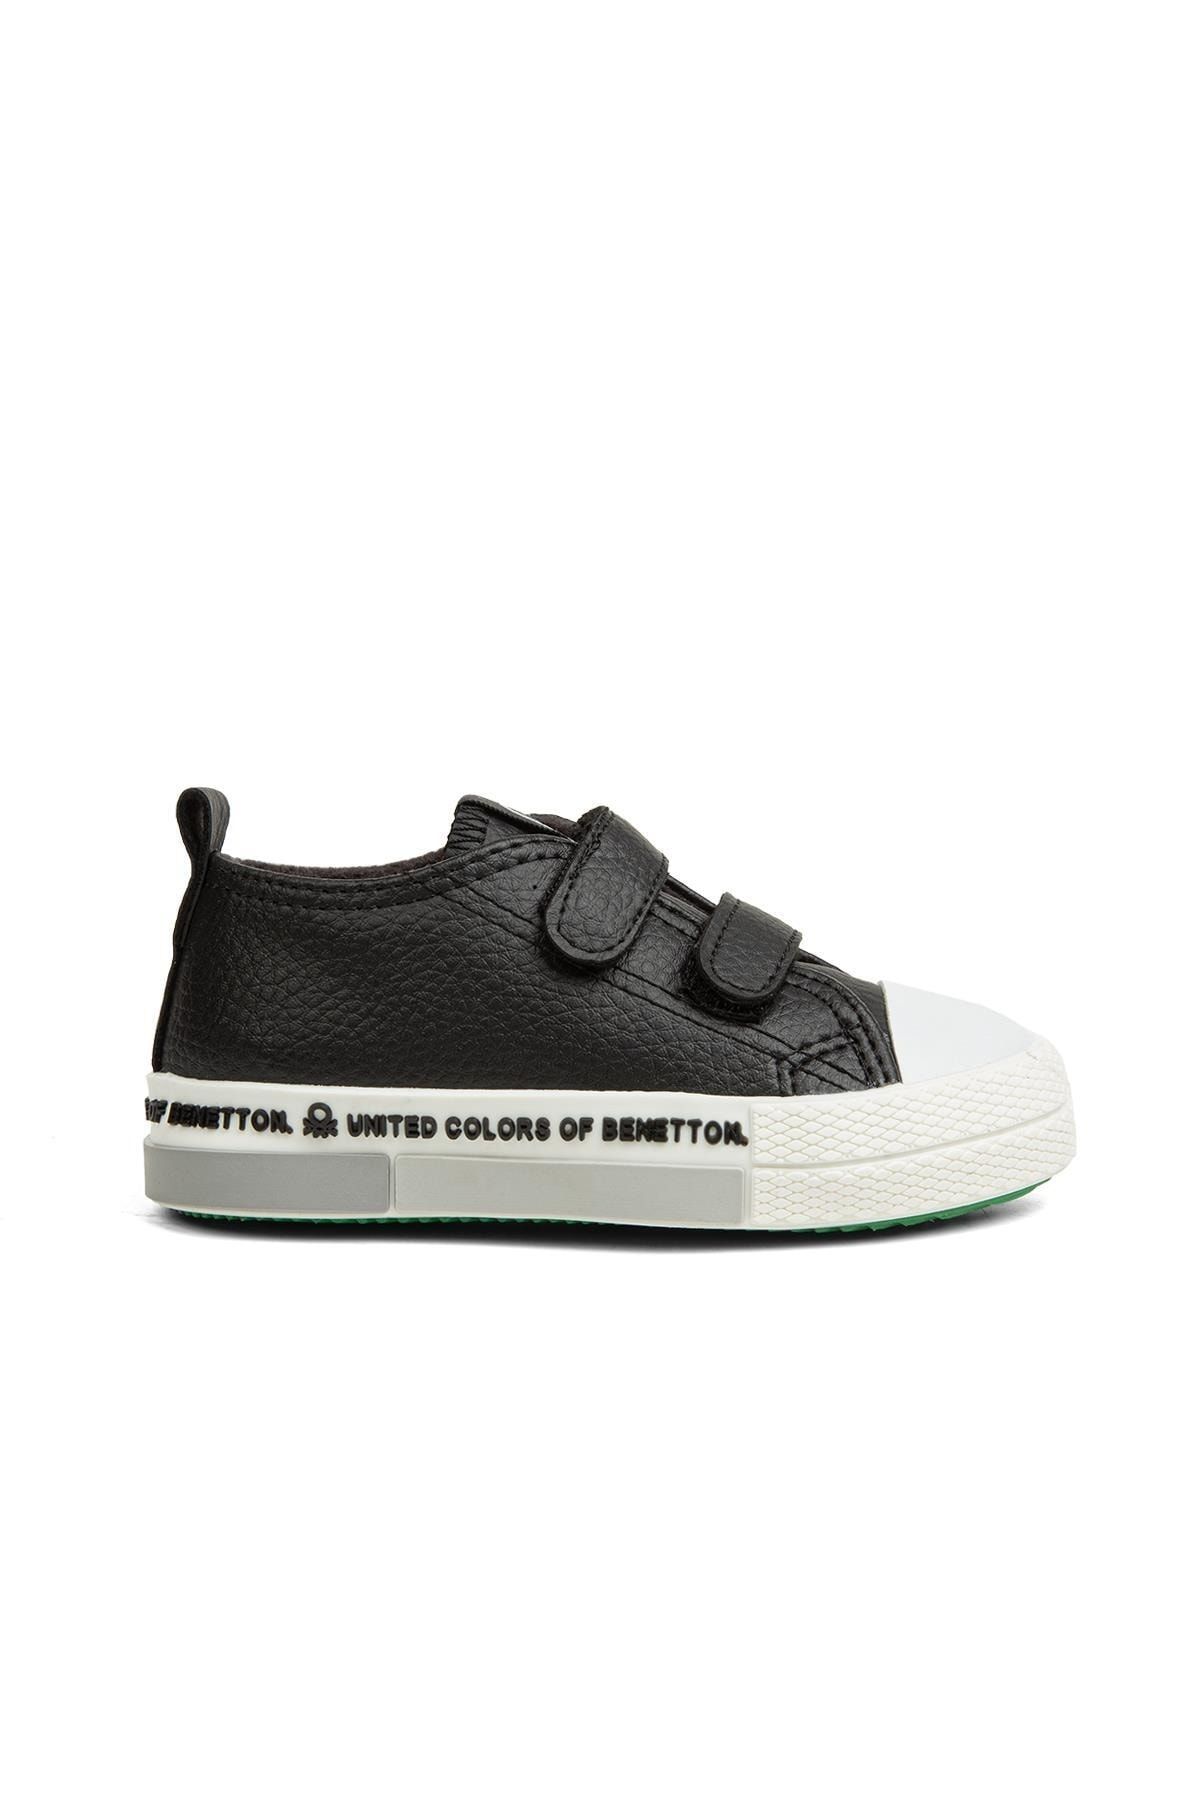 Benetton ® | Bn-30802- 3394 Siyah - Çocuk Spor Ayakkabı